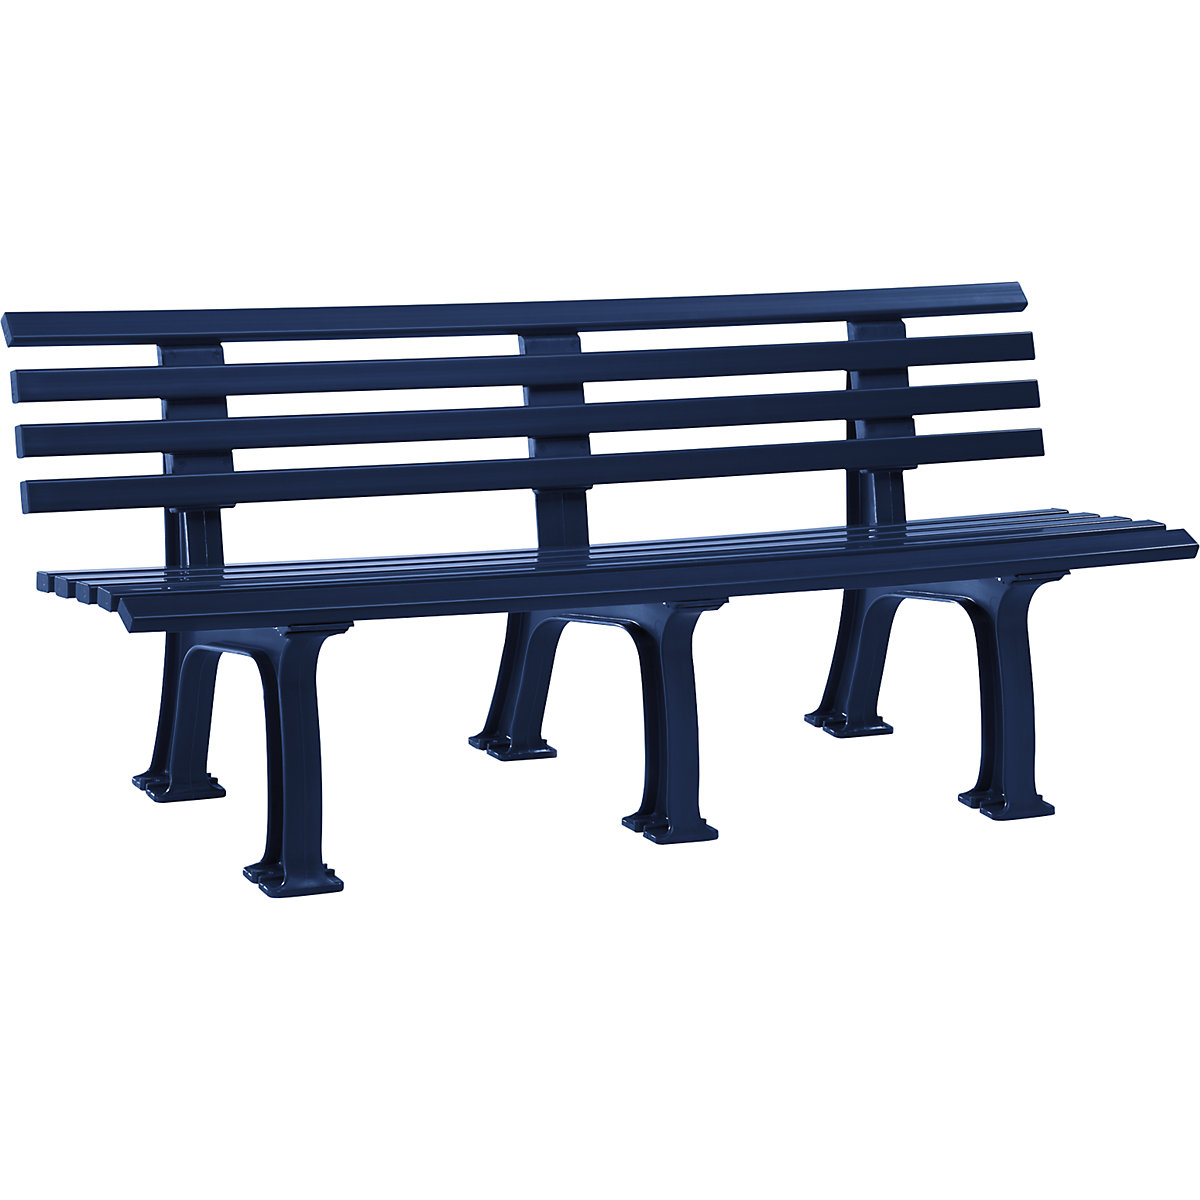 Parková lavička z plastu, s 9 lištami, šířka 2000 mm, ocelově modrá-12